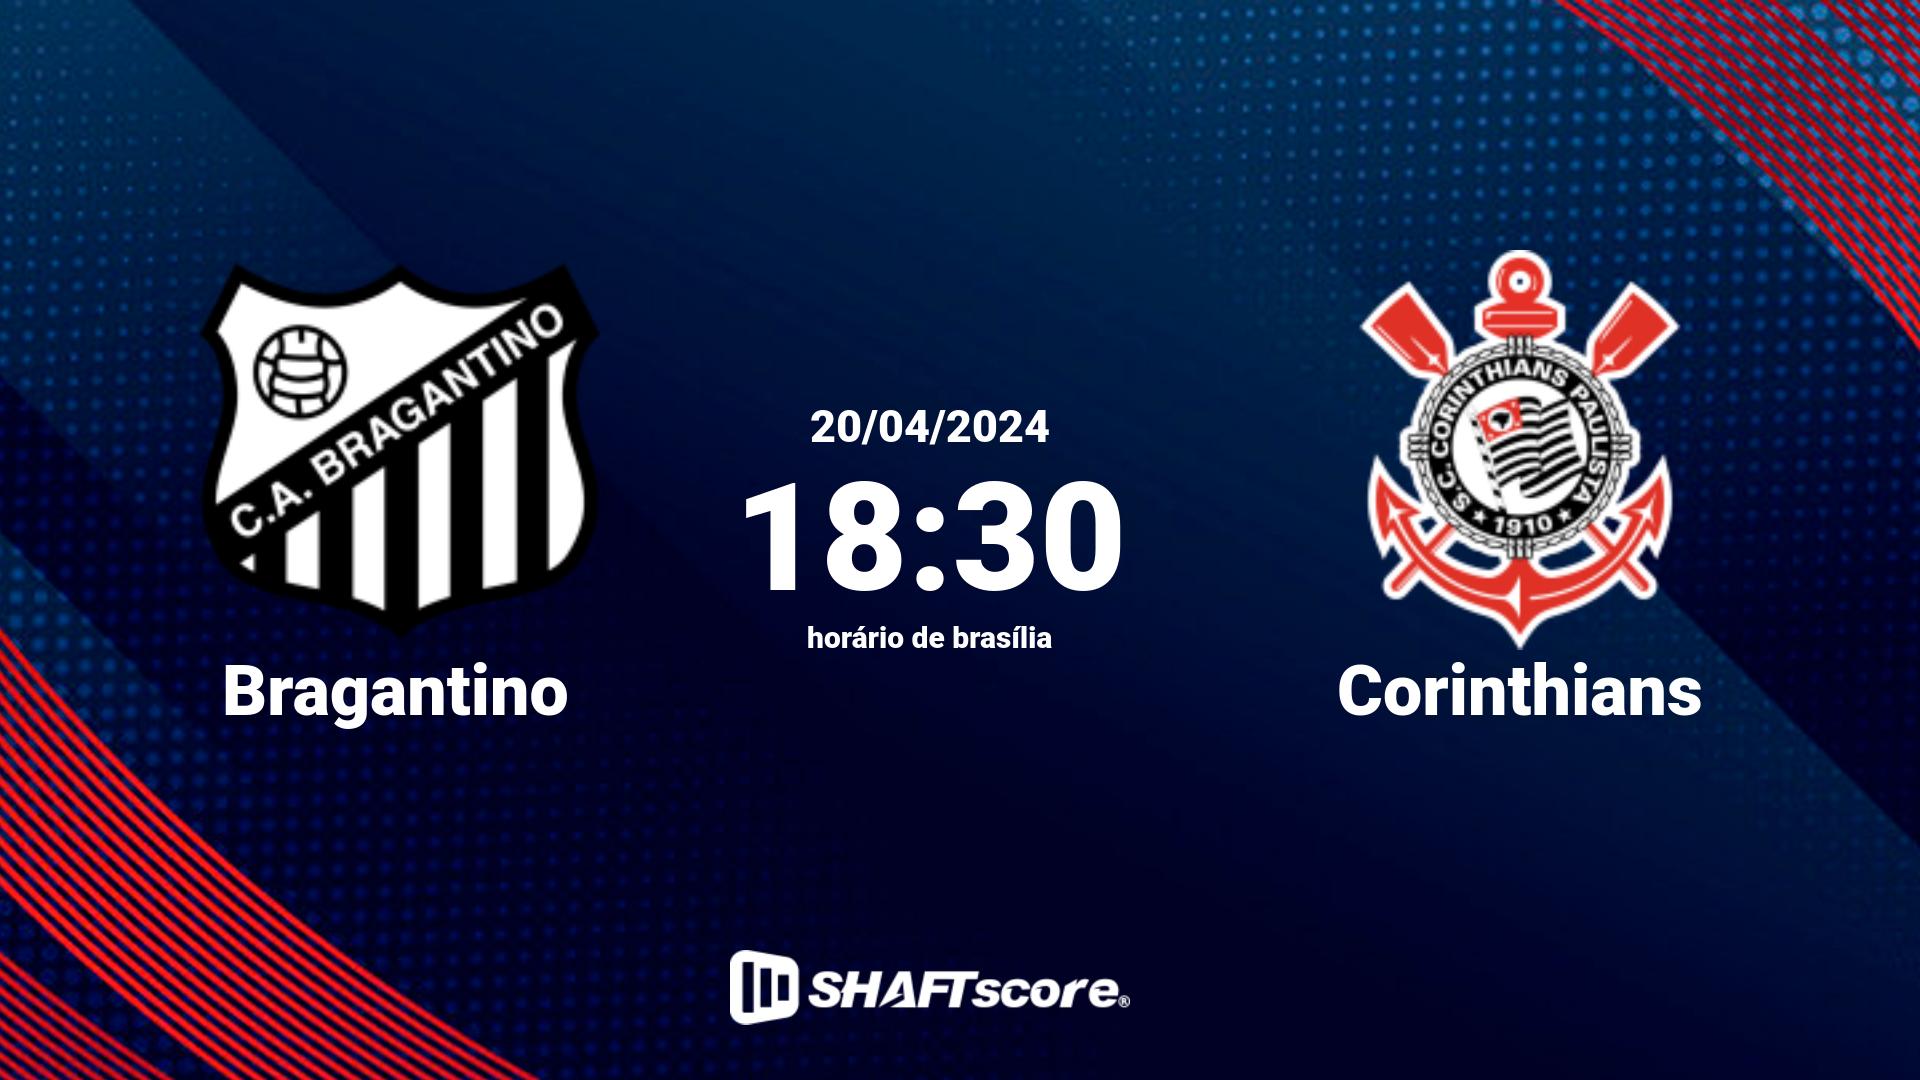 Estatísticas do jogo Bragantino vs Corinthians 20.04 18:30